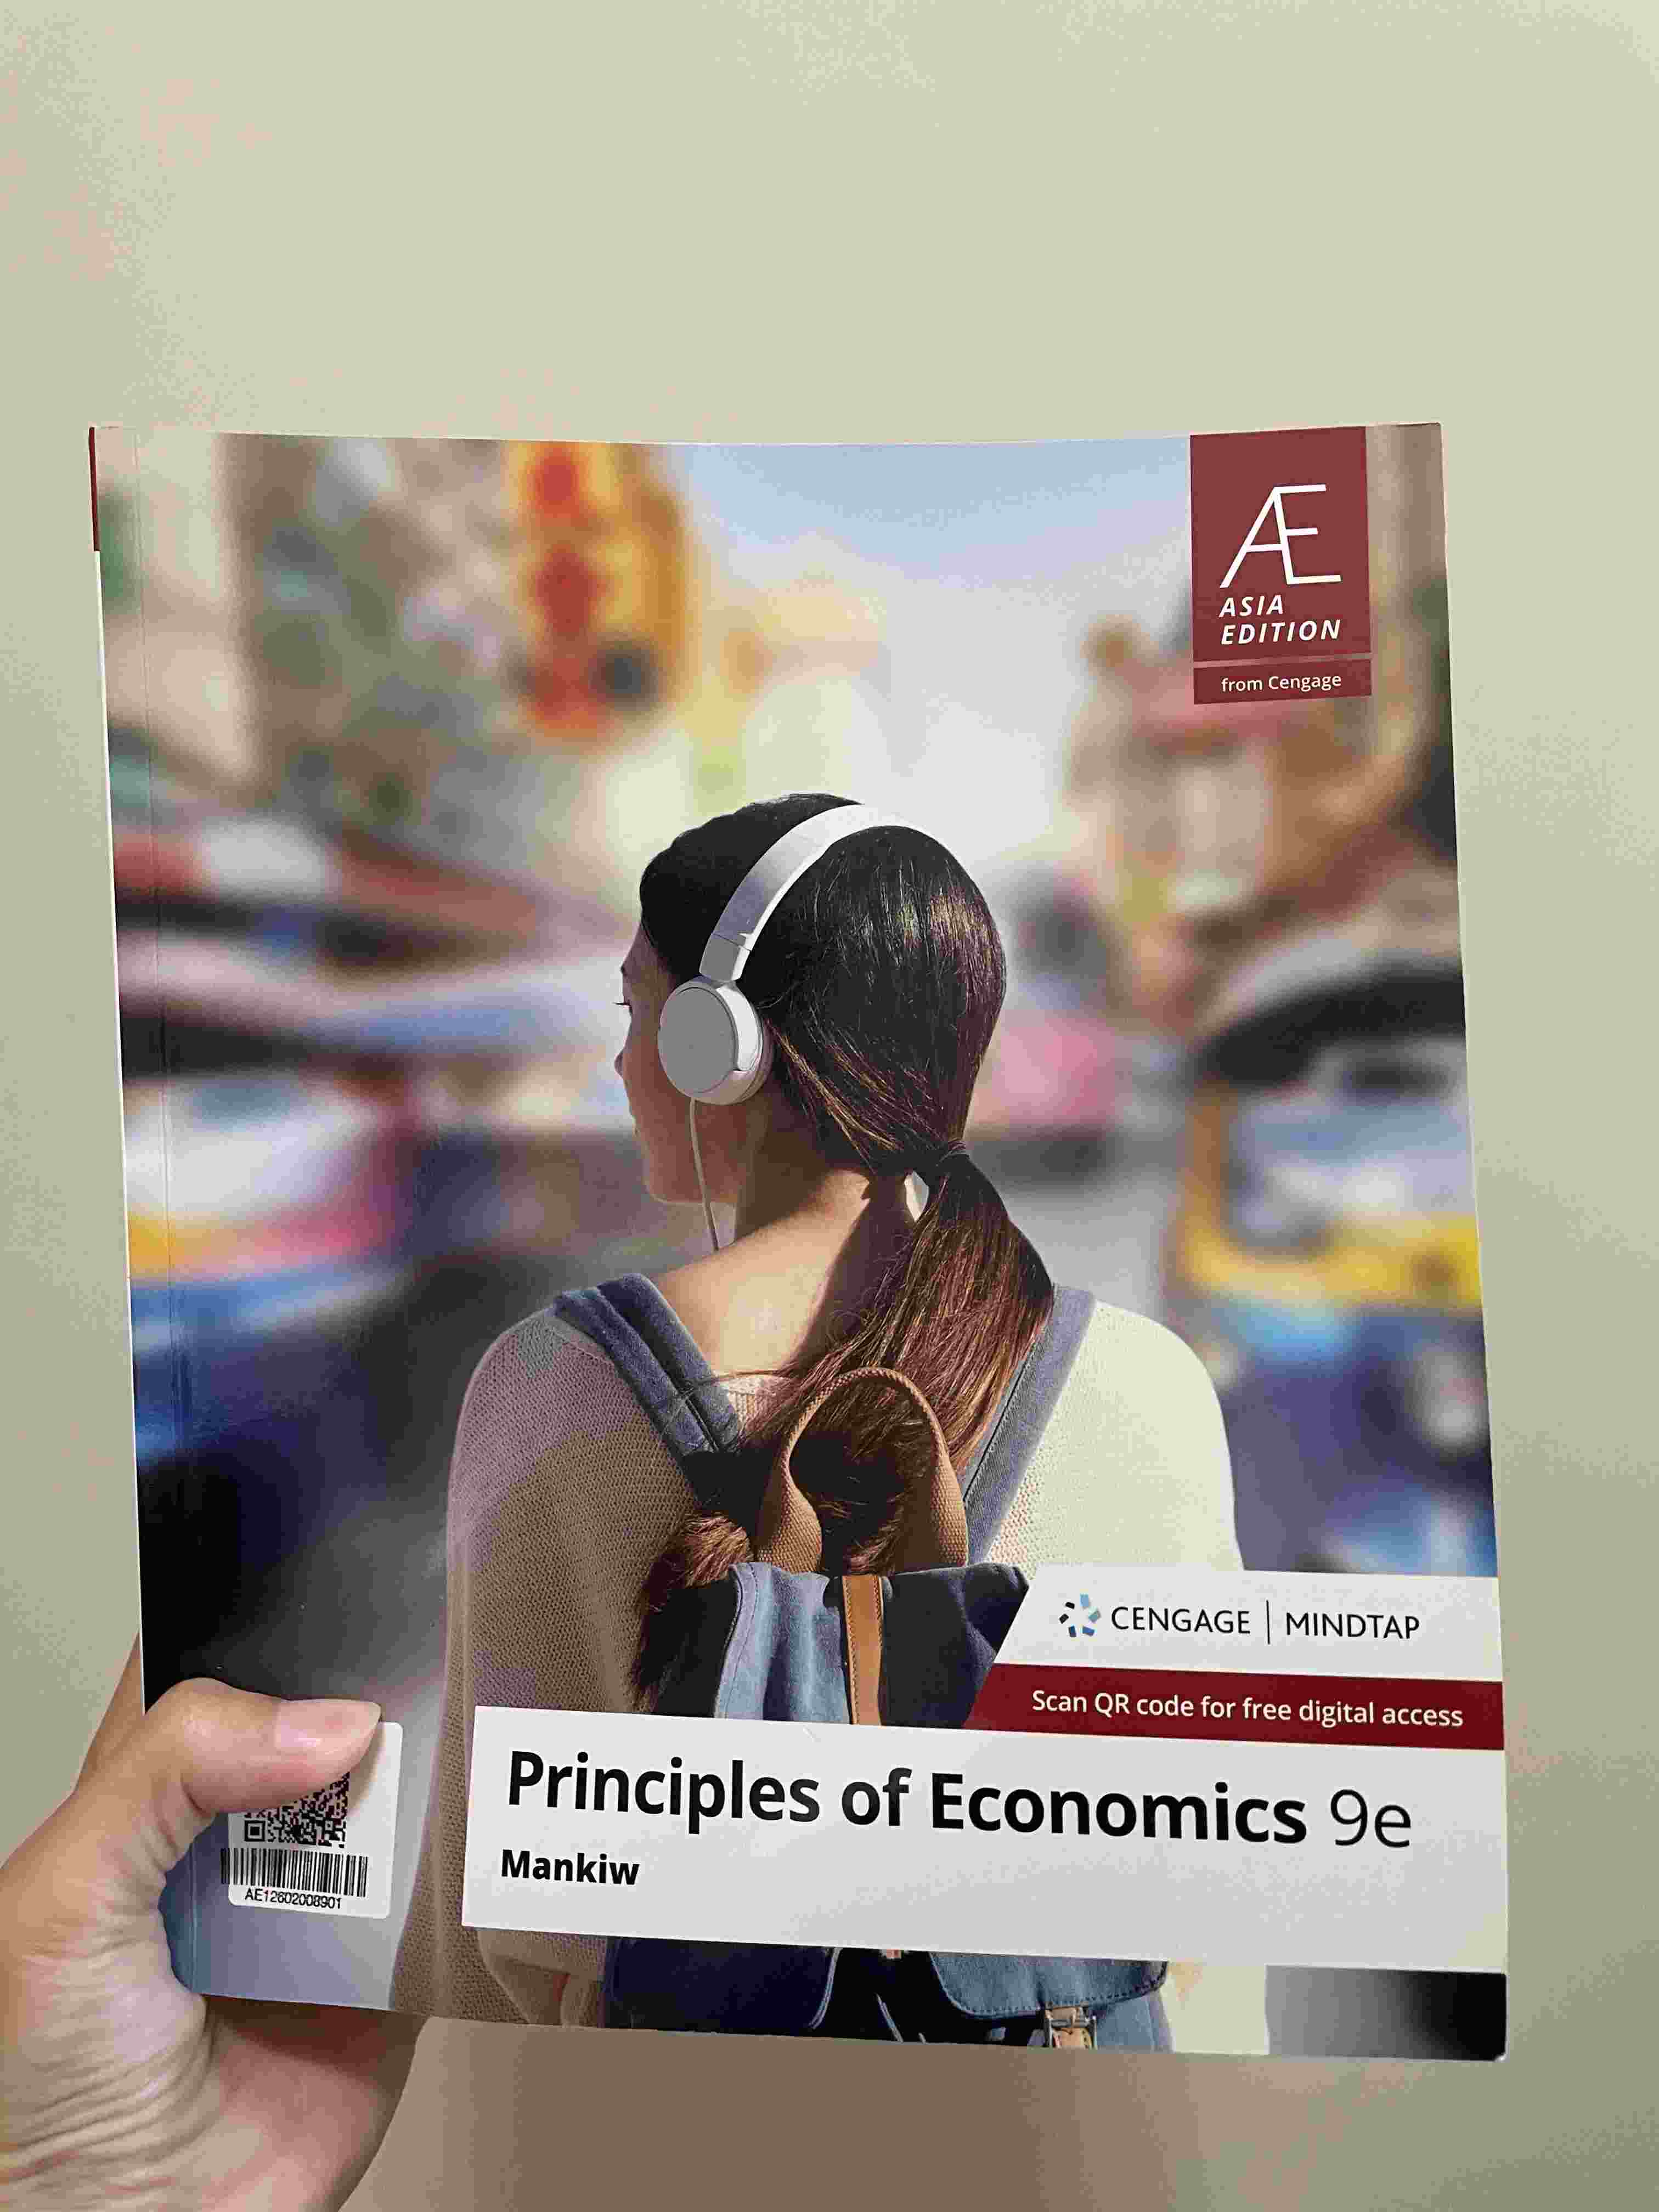 Principles of Economics 9e 詳細資料